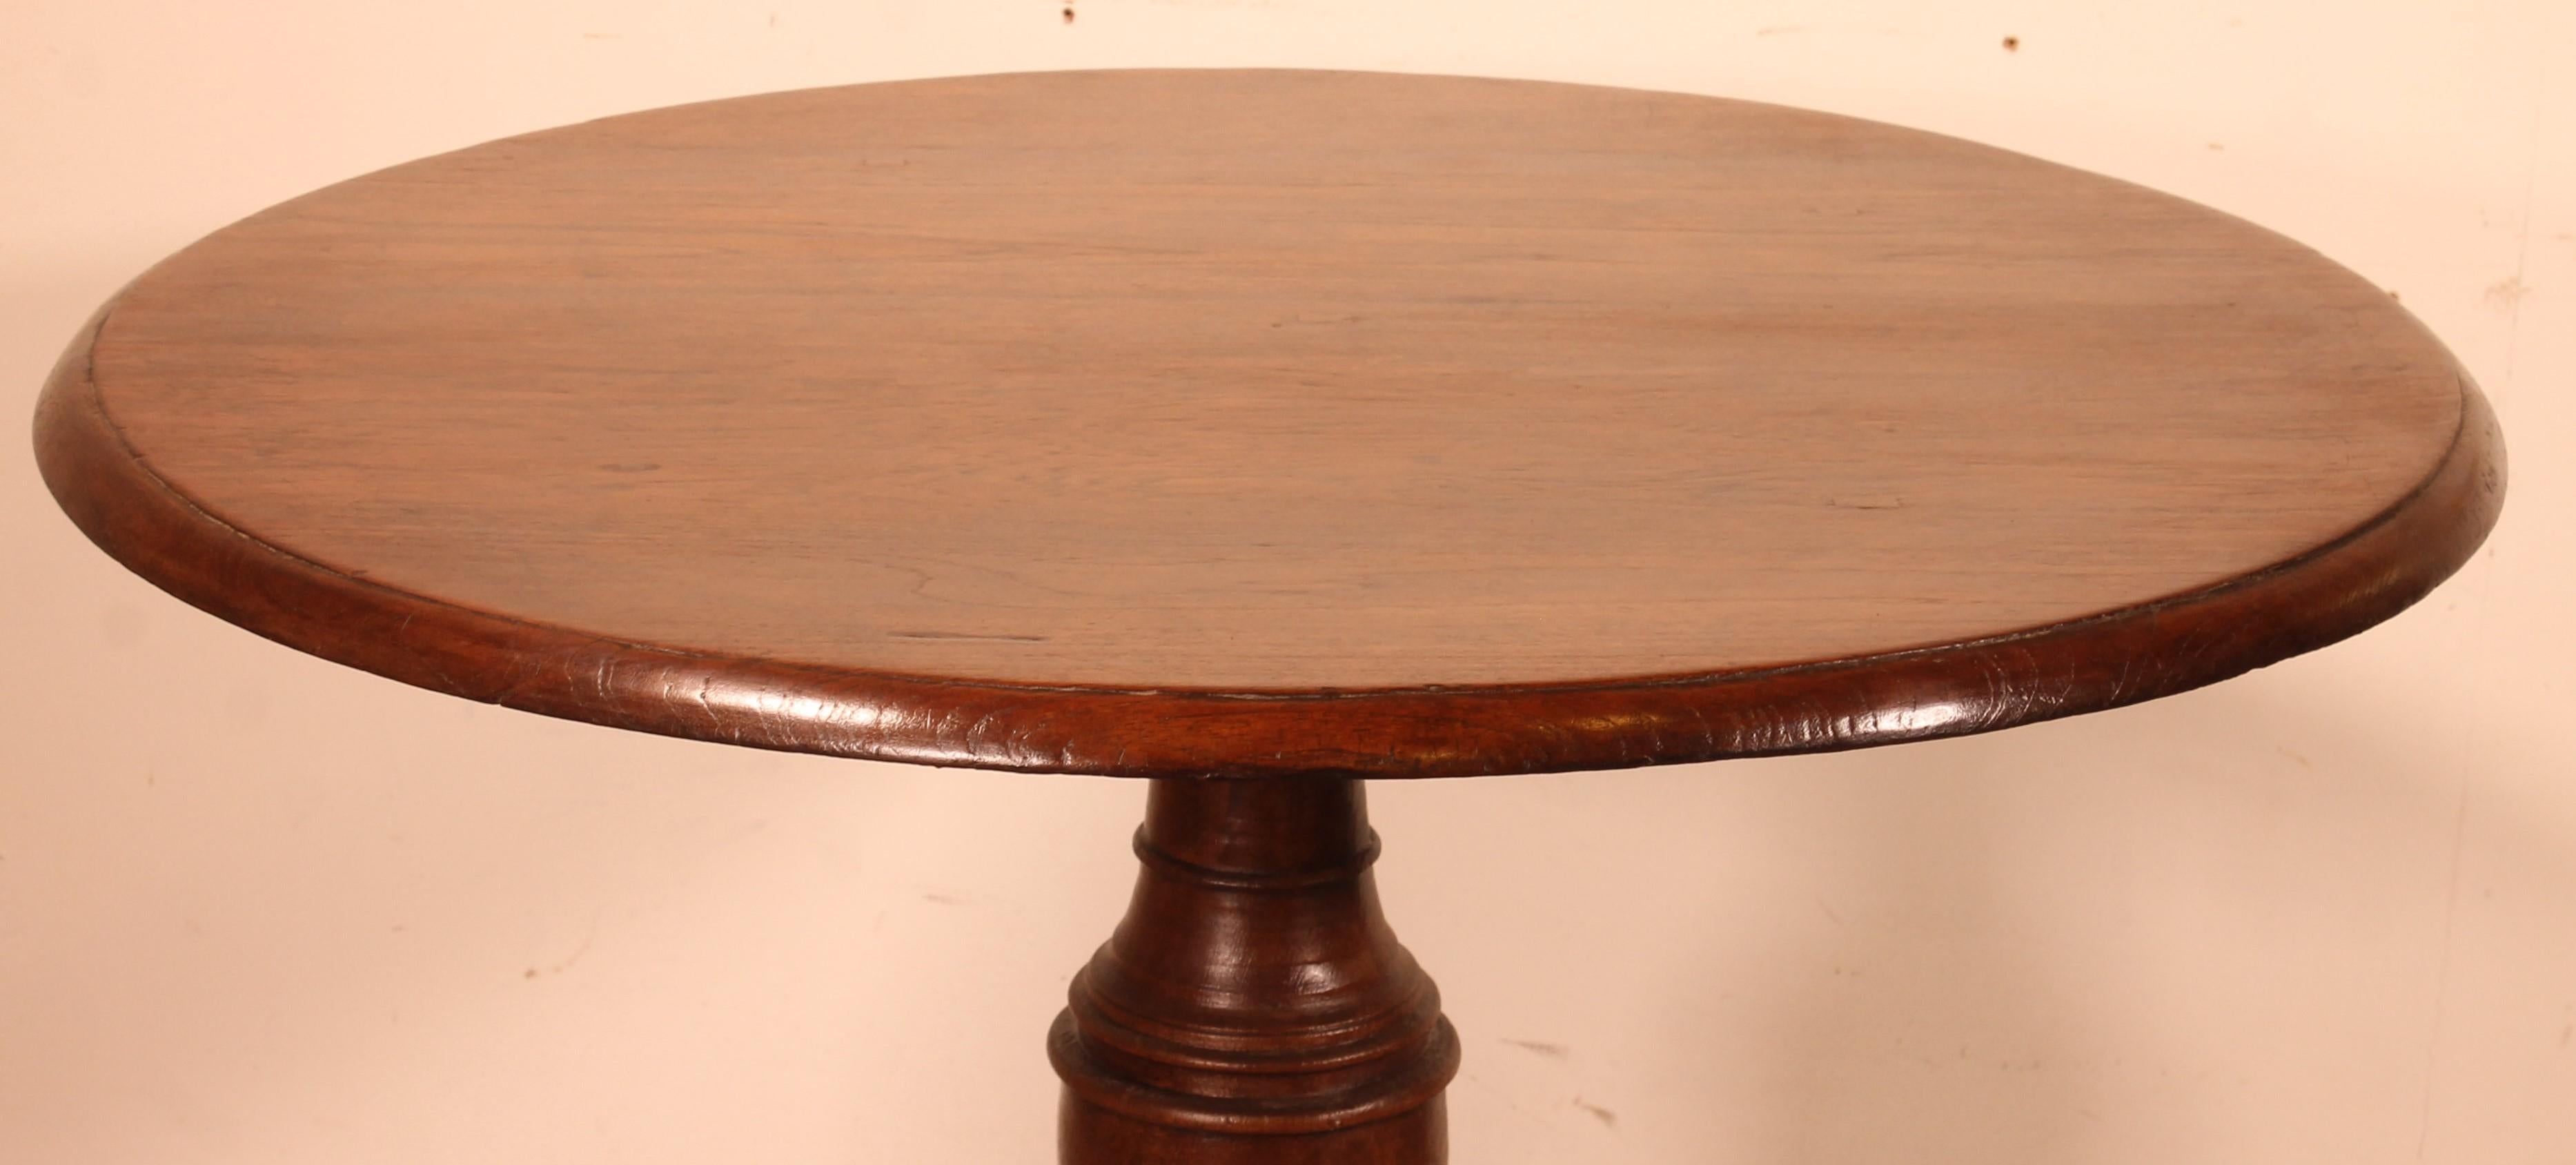 Eleganter portugiesischer Eichen-Sockeltisch aus dem 19. Jahrhundert

Sehr schöner Mitteltisch, der sich mit seiner rustikalen Seite von den üblichen Sockeltischen abhebt
Sehr schönes einteiliges Oberteil mit Corbin-Schnabel
Es ruht auf einem